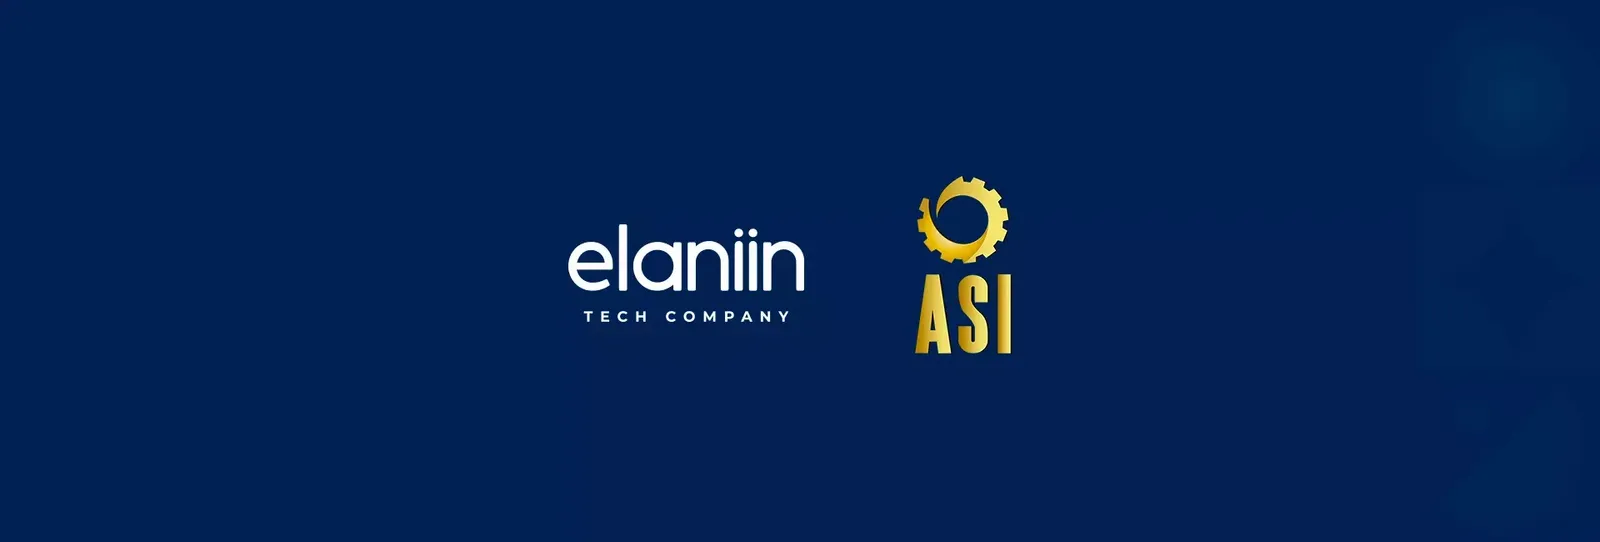 Elaniin is now a member of ASI El Salvador!